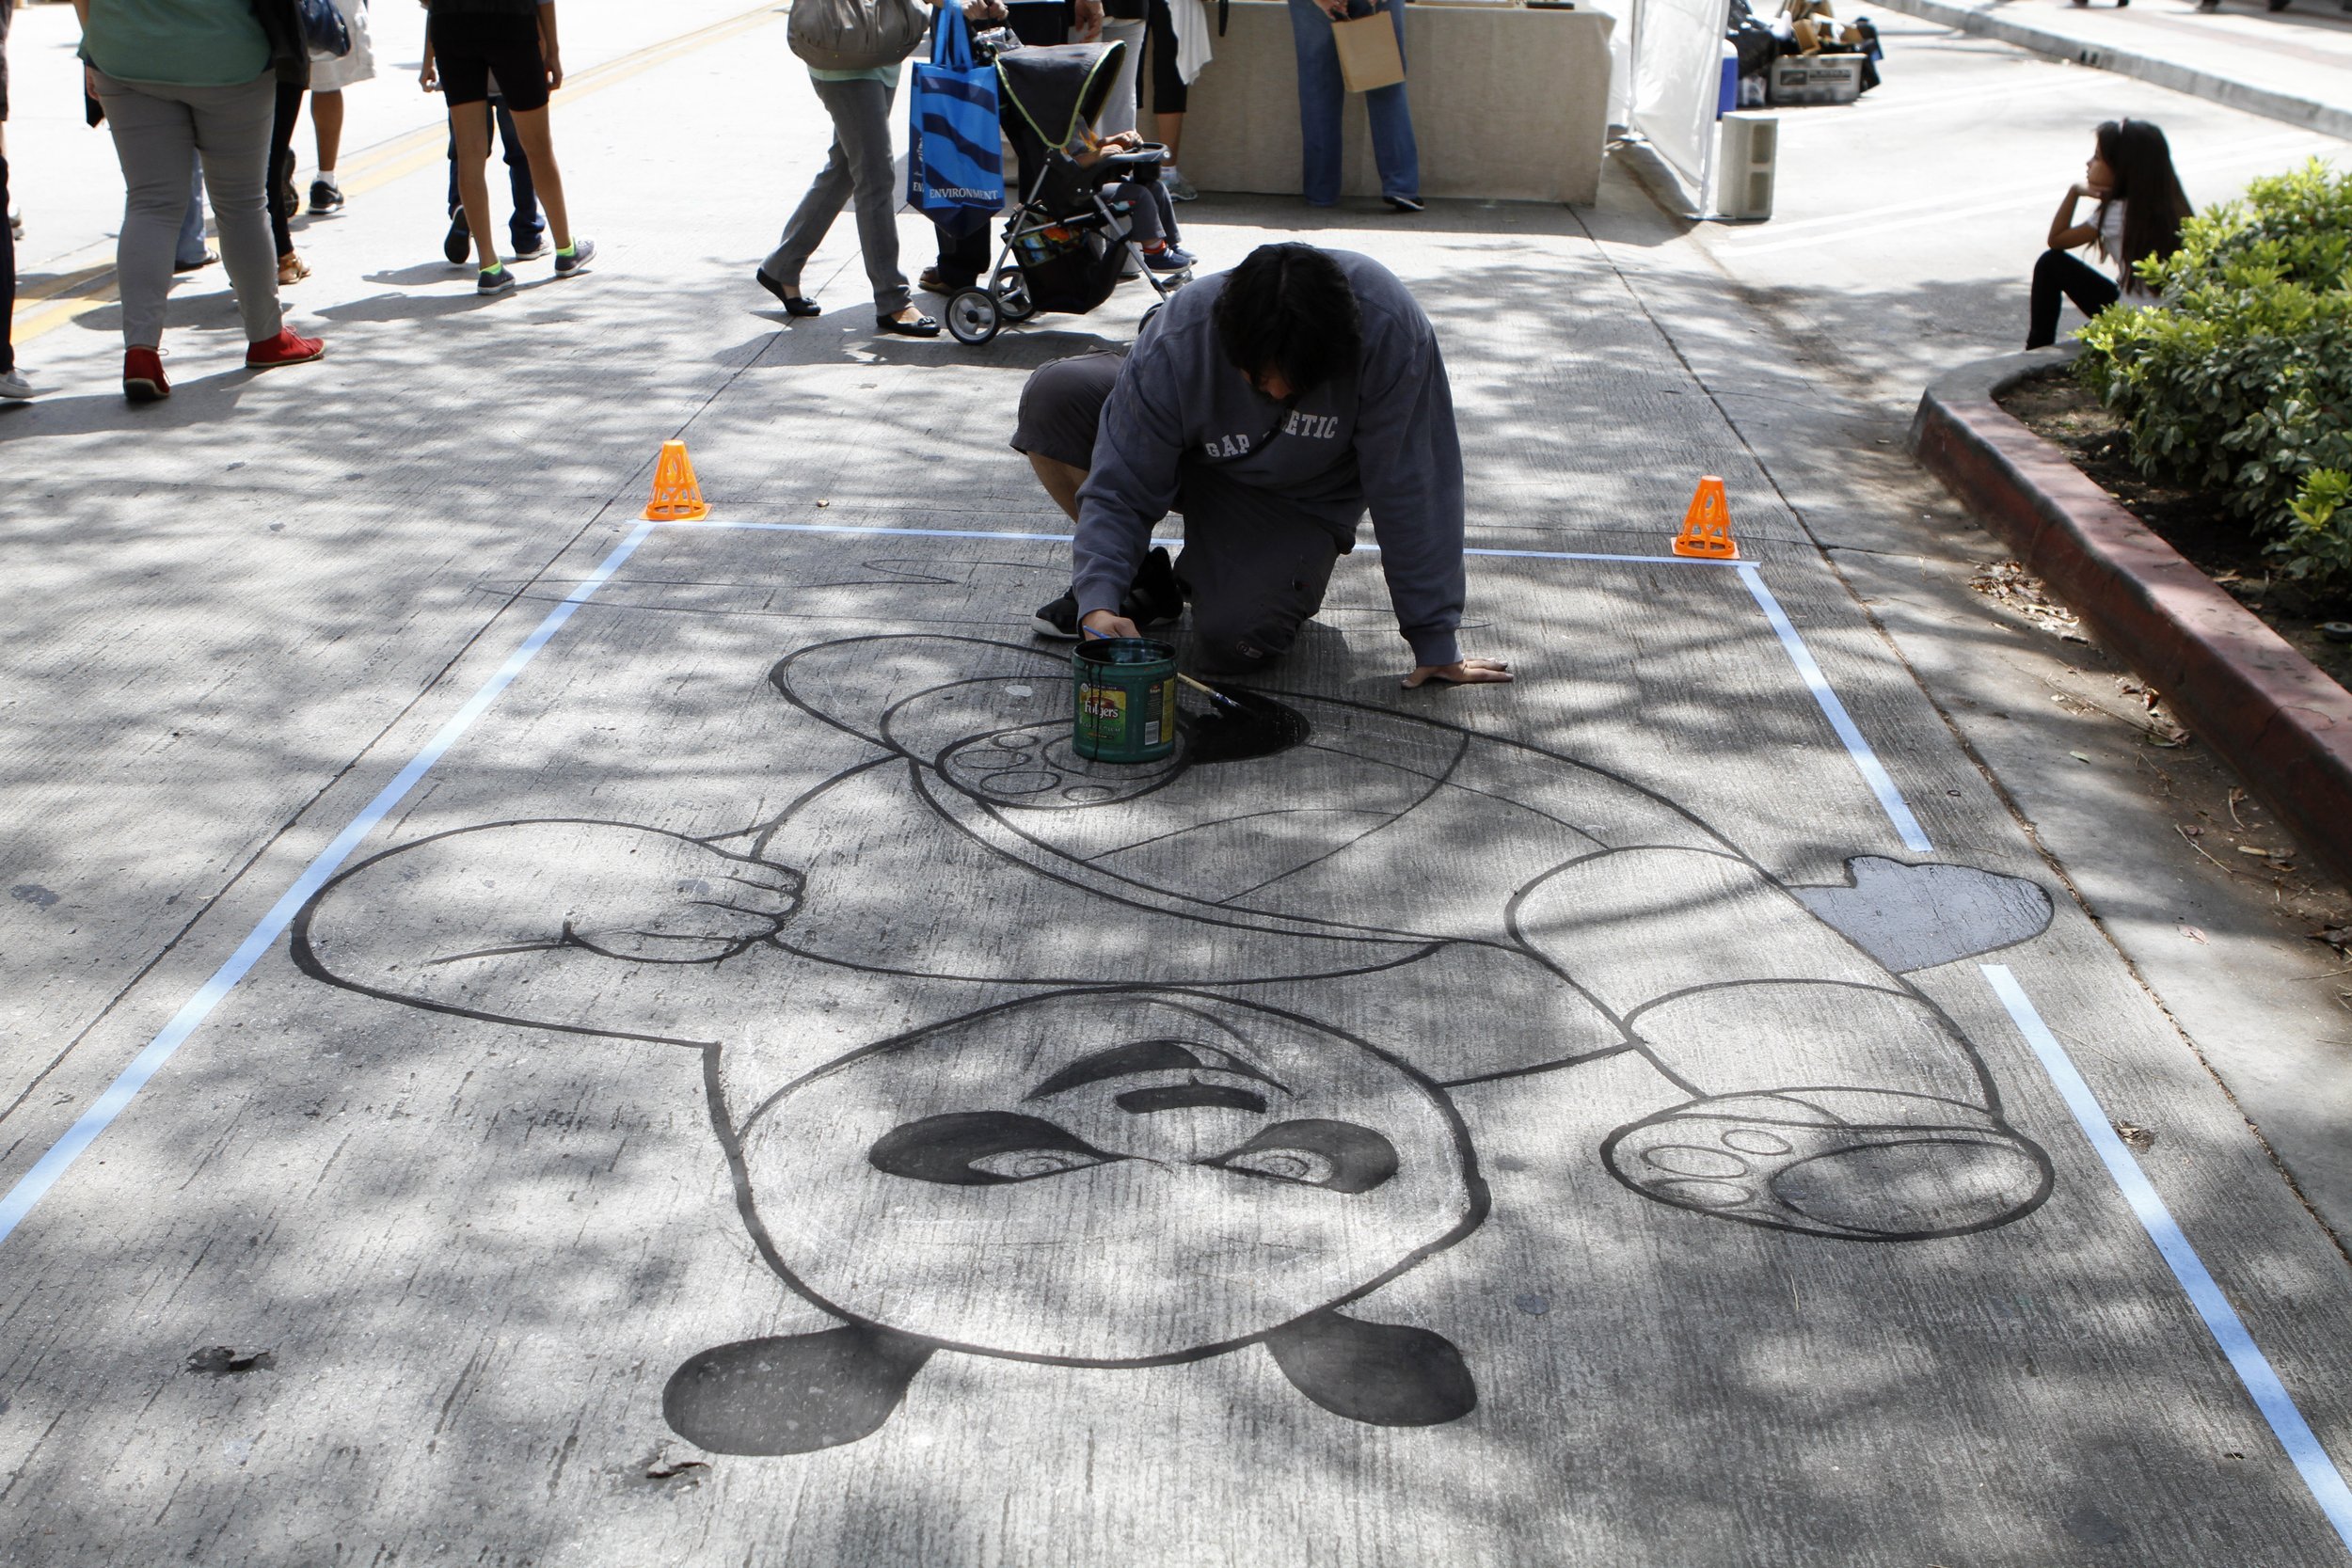 Chalk Art In Progress | Downtown Burbank